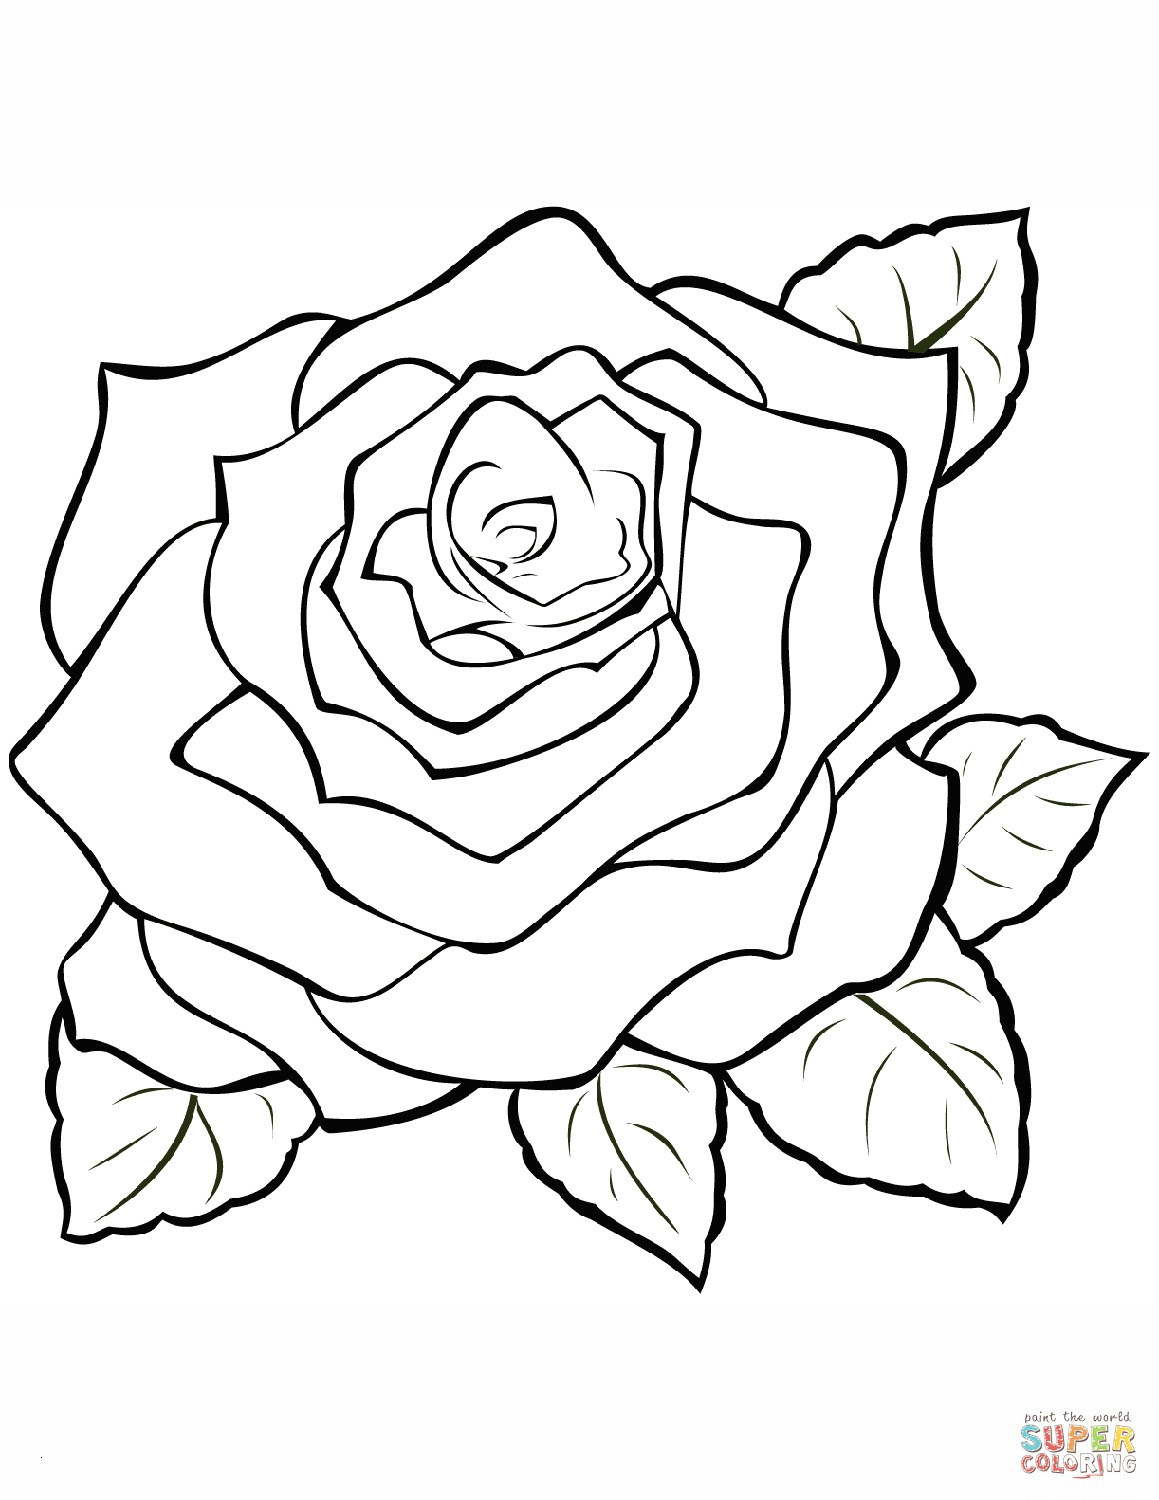 Draw A Full Rose Malvorlage Rose Das Beste Von 40 Ausmalbilder Rosen Scoredatscore